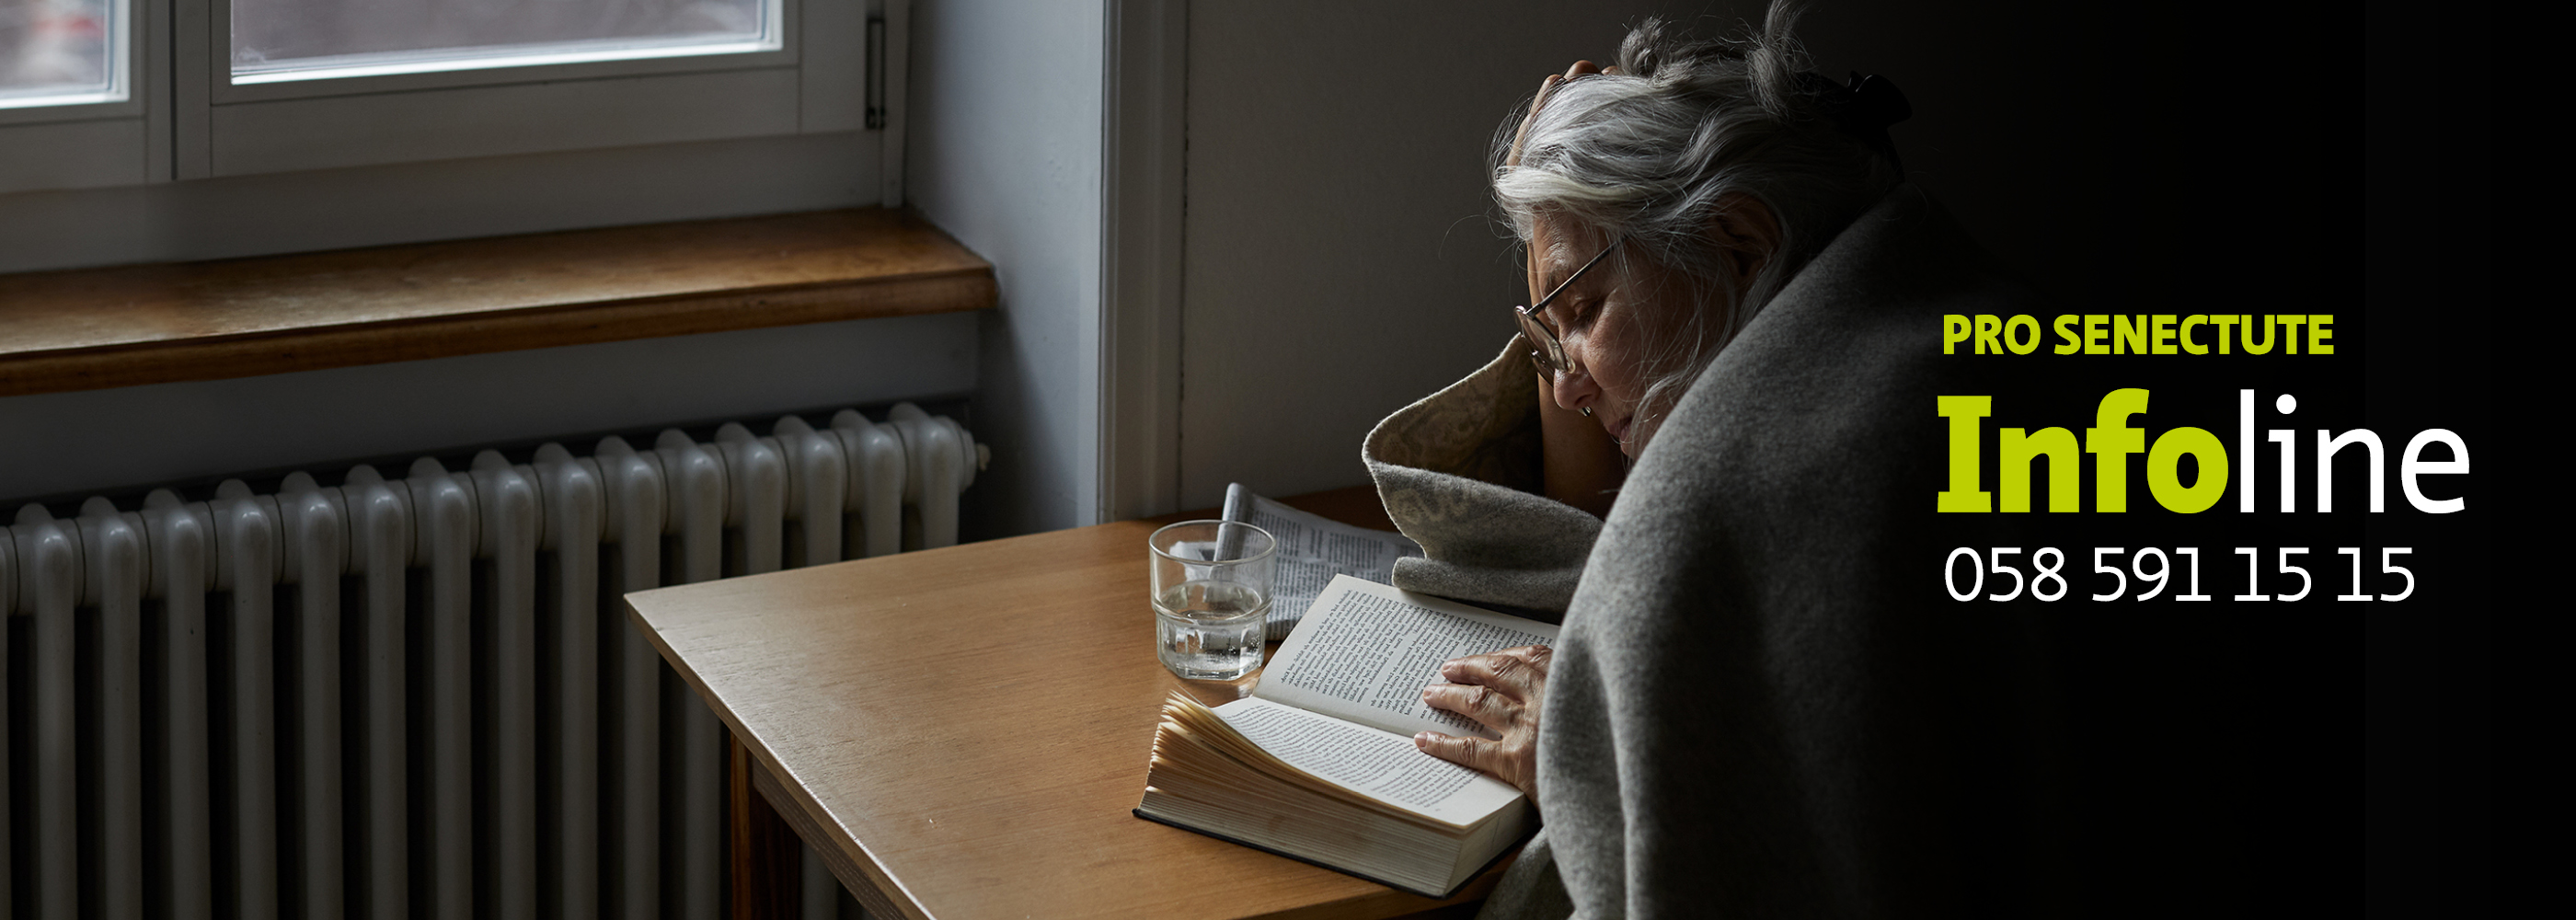 Une femme âgée avec une couverture lit un livre.